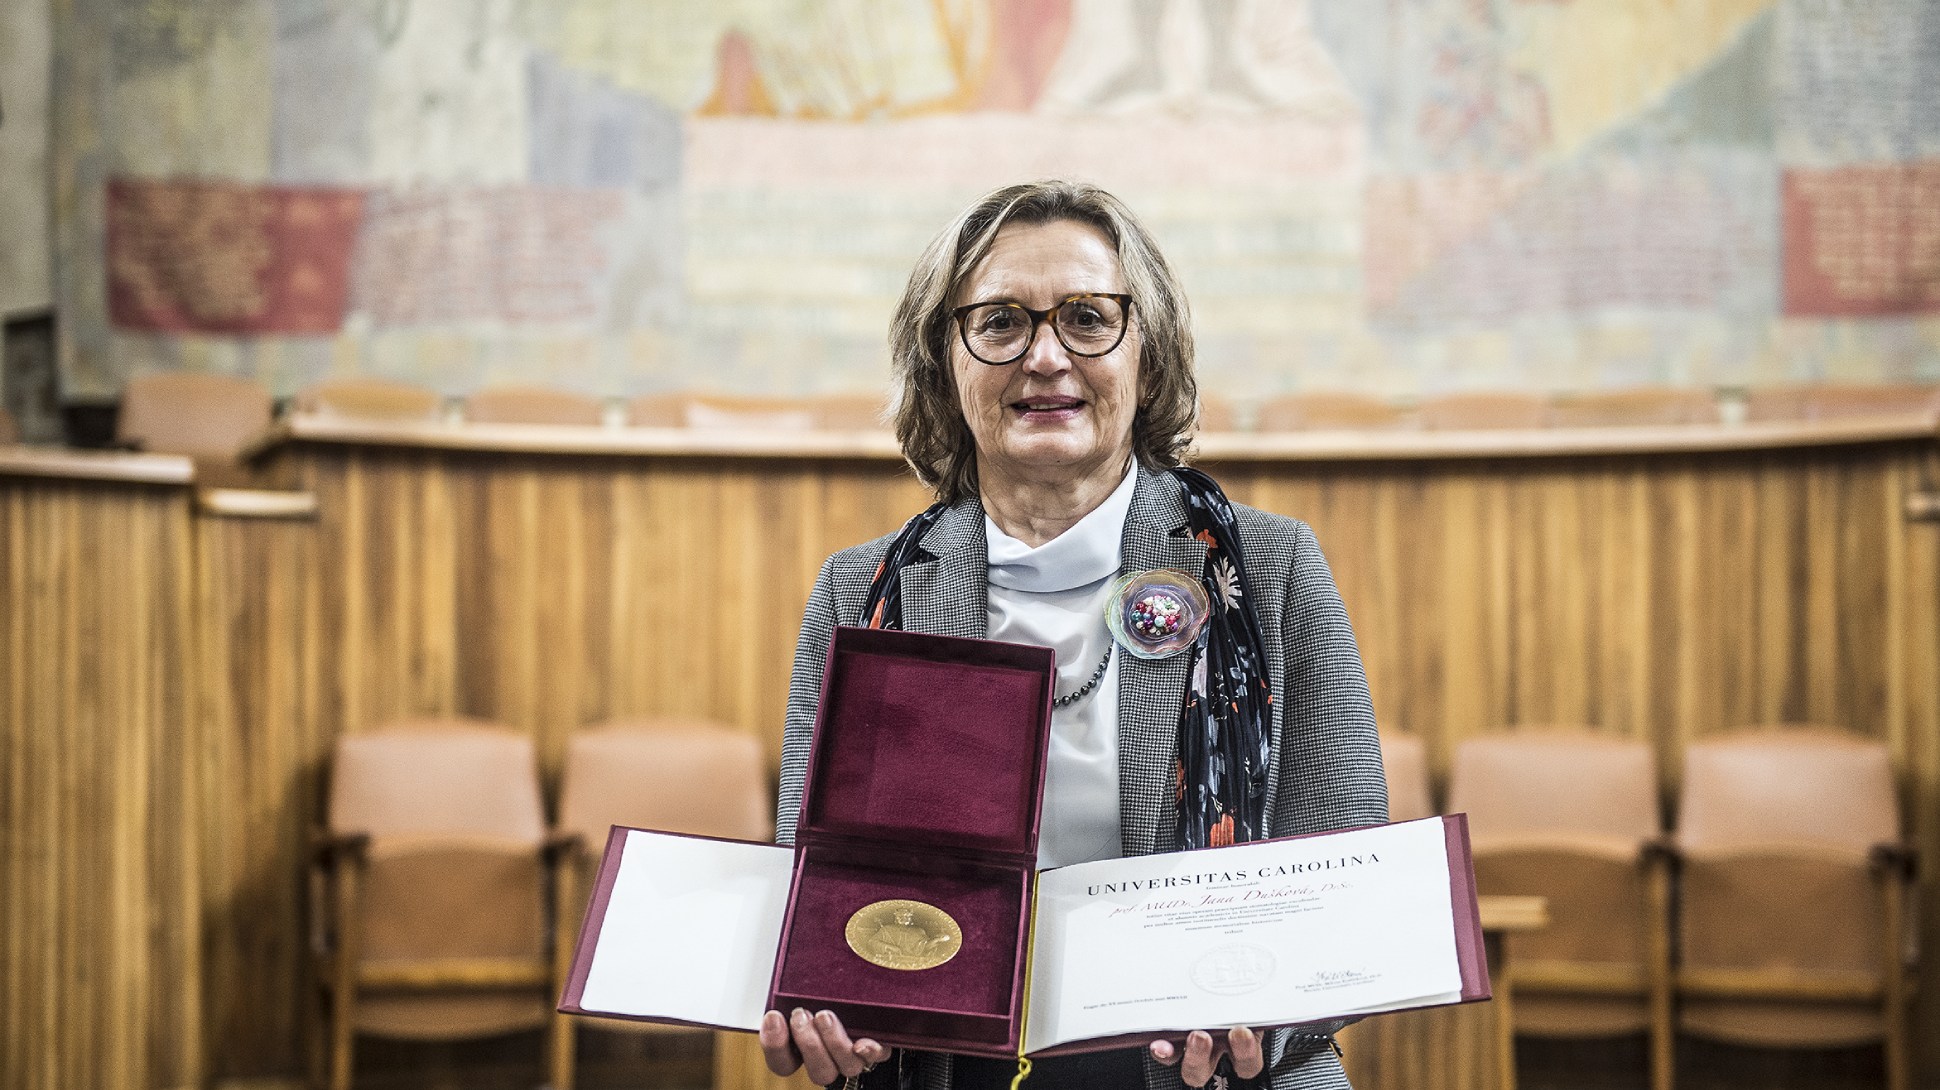 Profesorka Dušková z 1. LF UK  obdržela pamětní medaili UK 